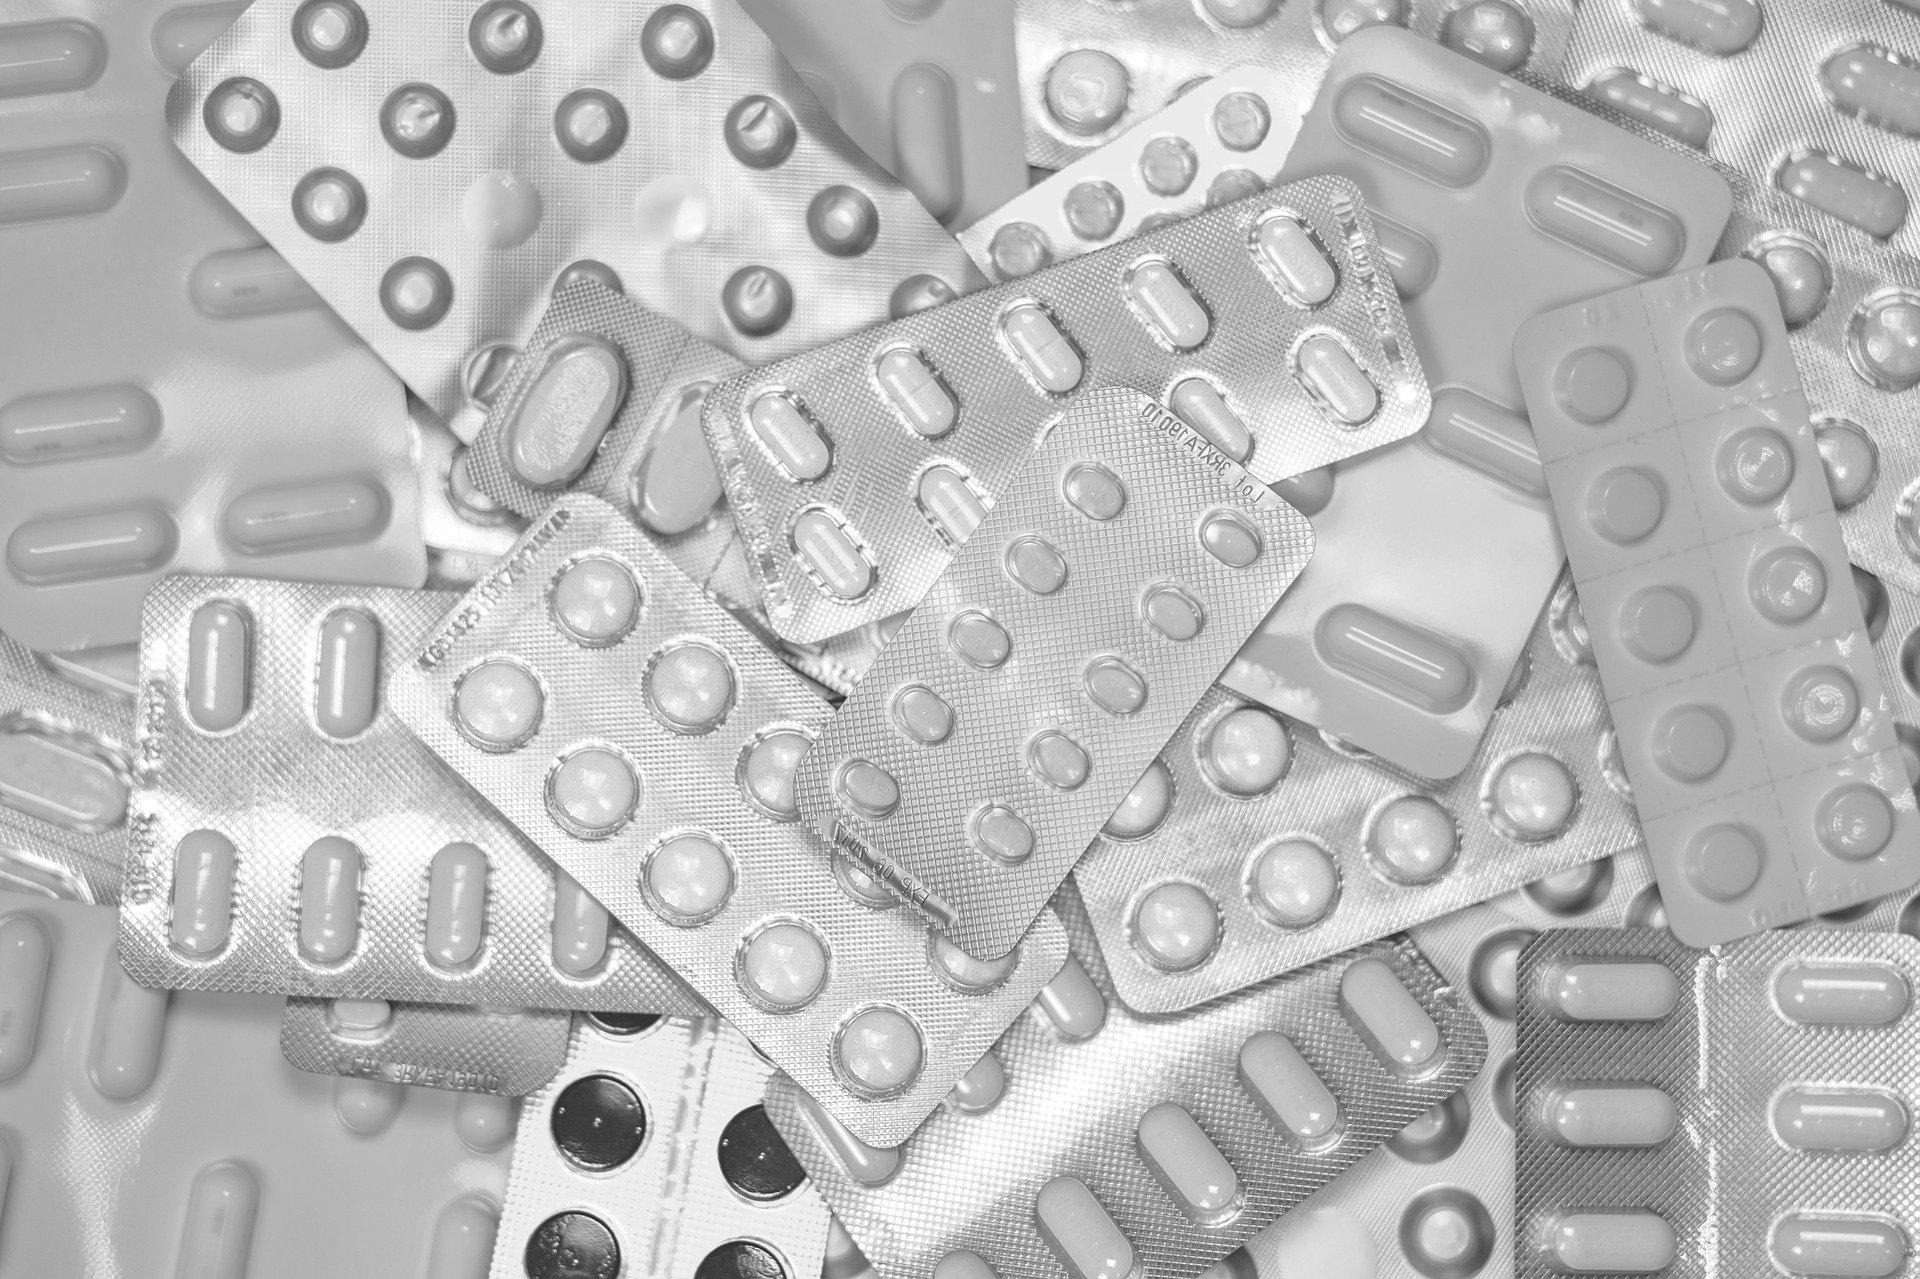 Sanidad informa que el ibuprofeno no agrava las infecciones por coronavirus